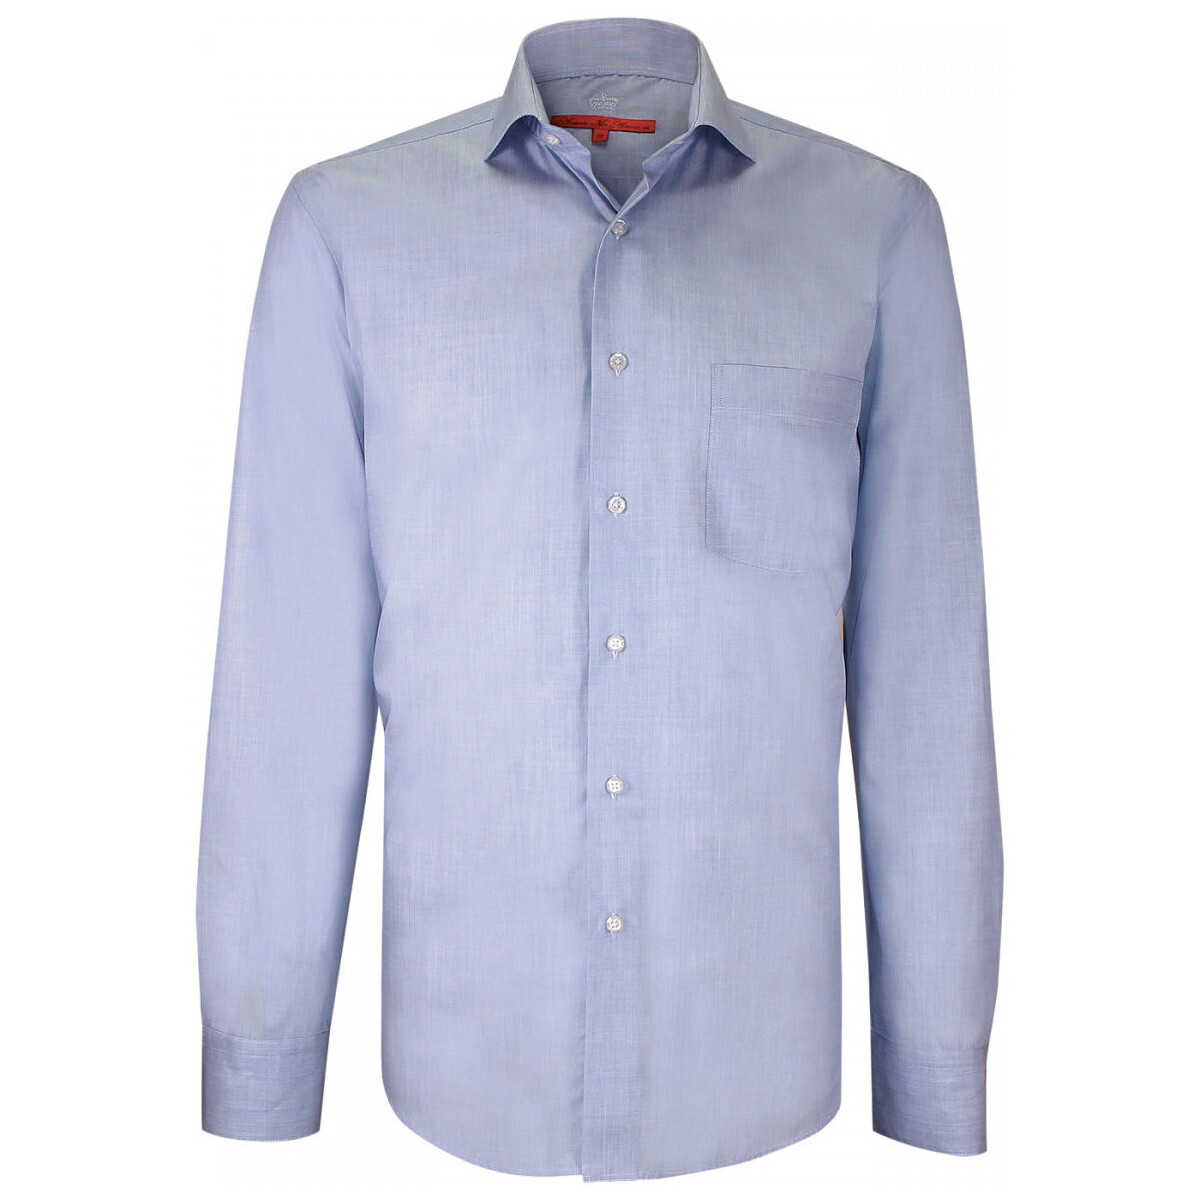 Vêtements Homme Chemises manches longues Andrew Mc Allister chemise business coupe droite william bleu Bleu